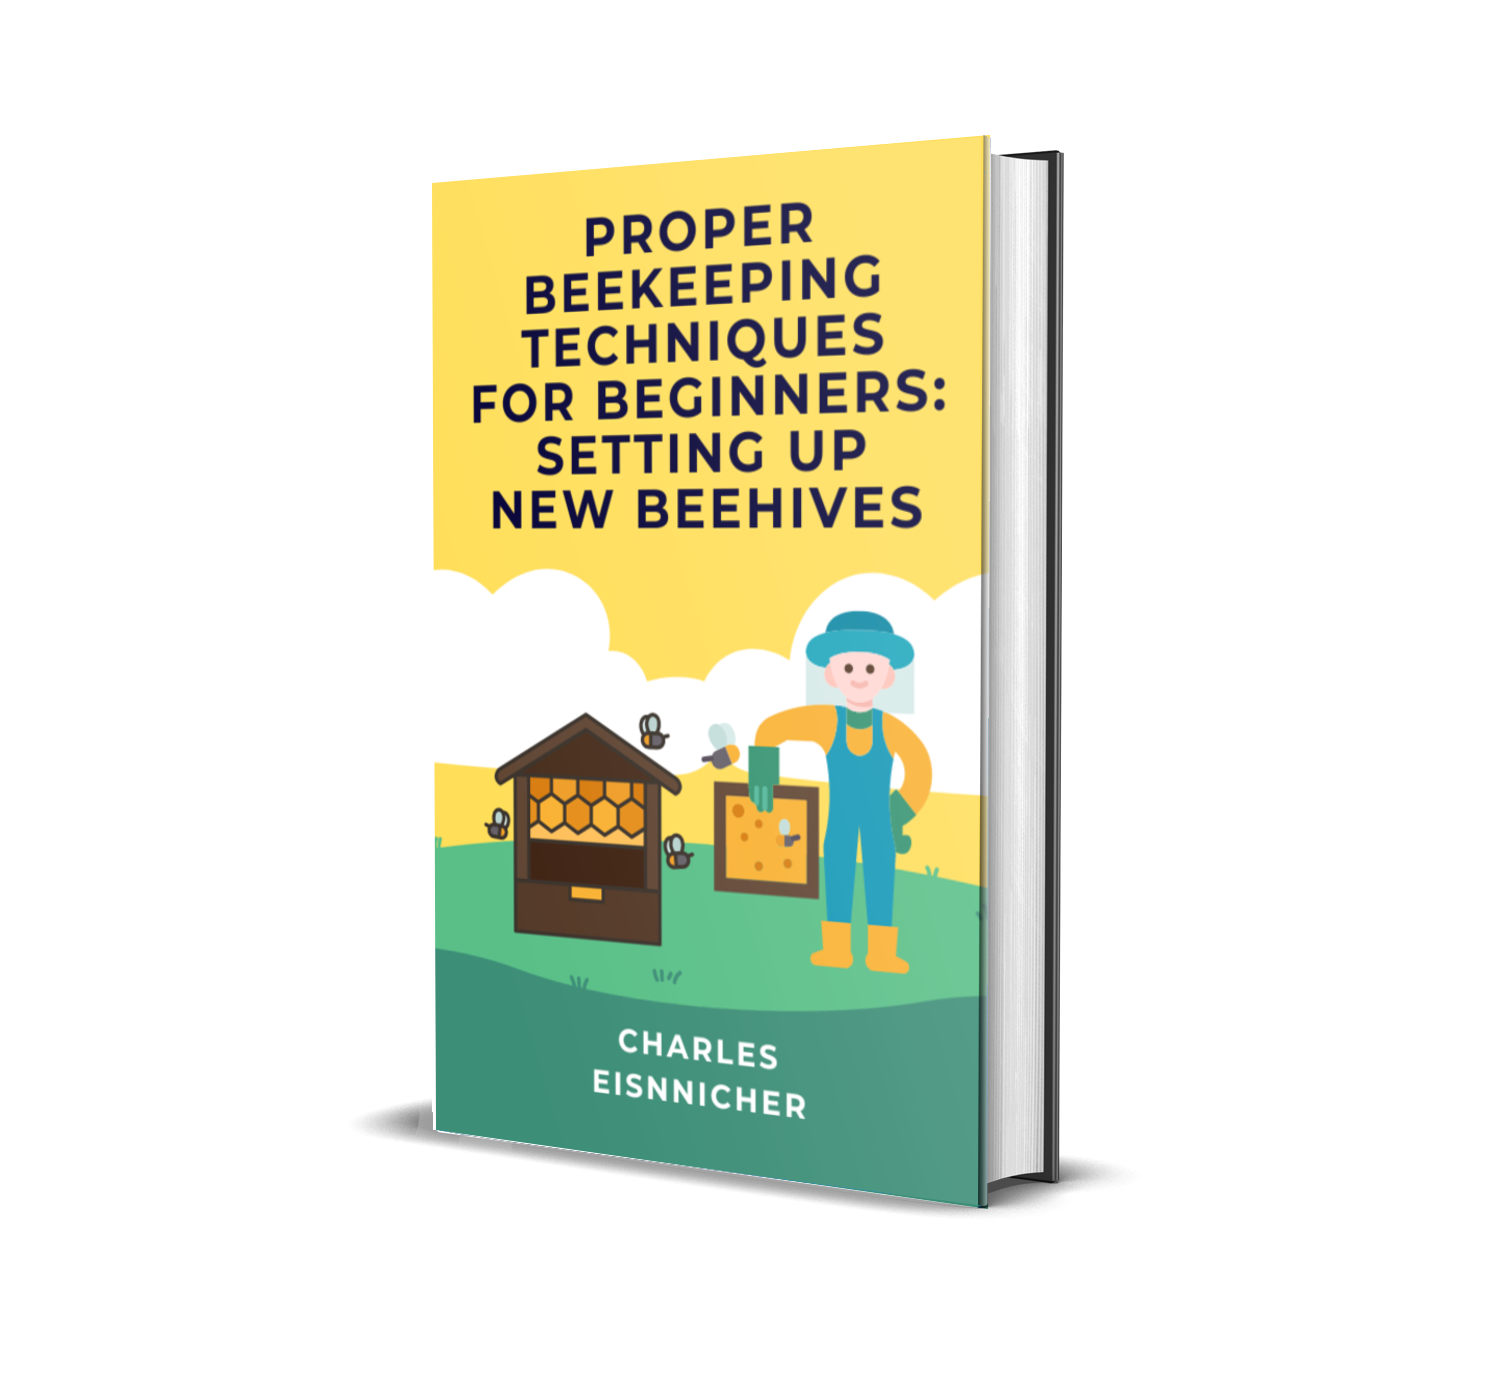 10 Essential Items Every Beekeeping Beginner Should Have in Their Kit - Beekeeping 101